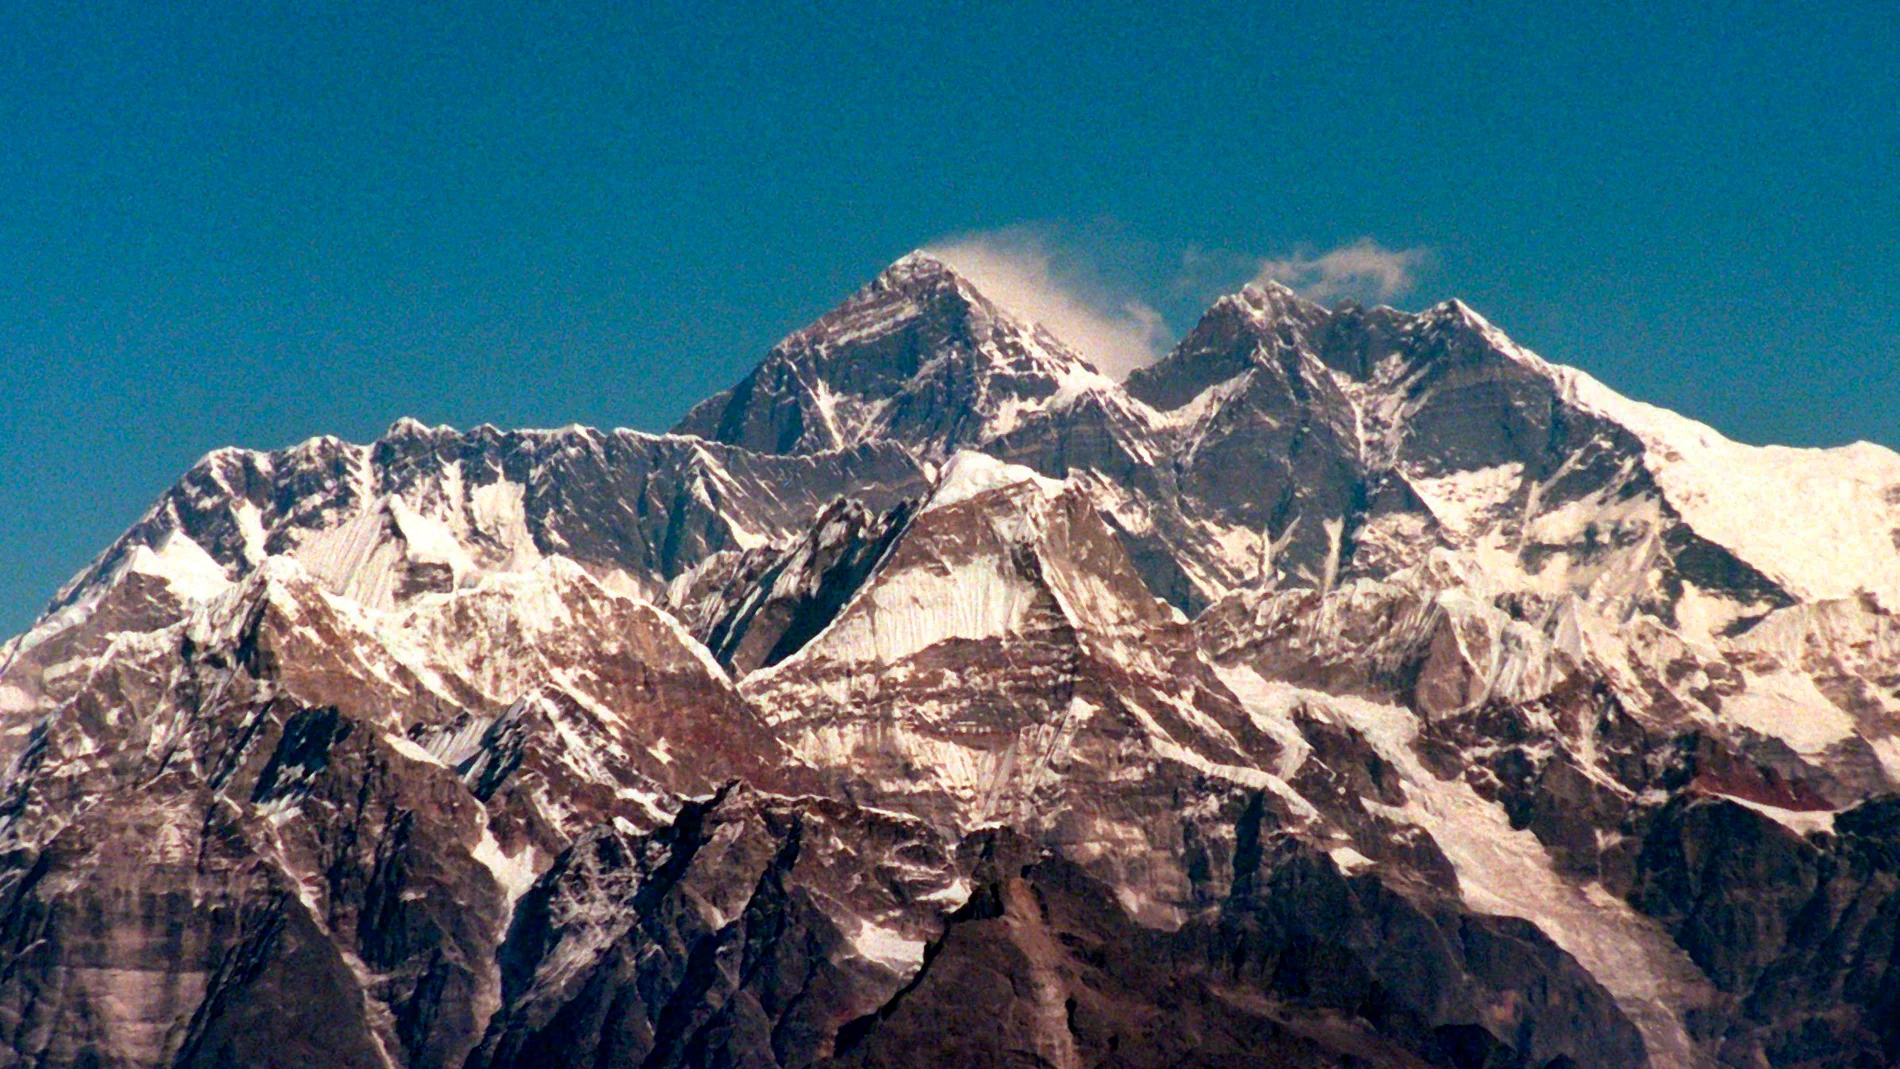 Fotografía de la cordillera himalaya y el Monte Everest, la montaña más alta de la Tierra